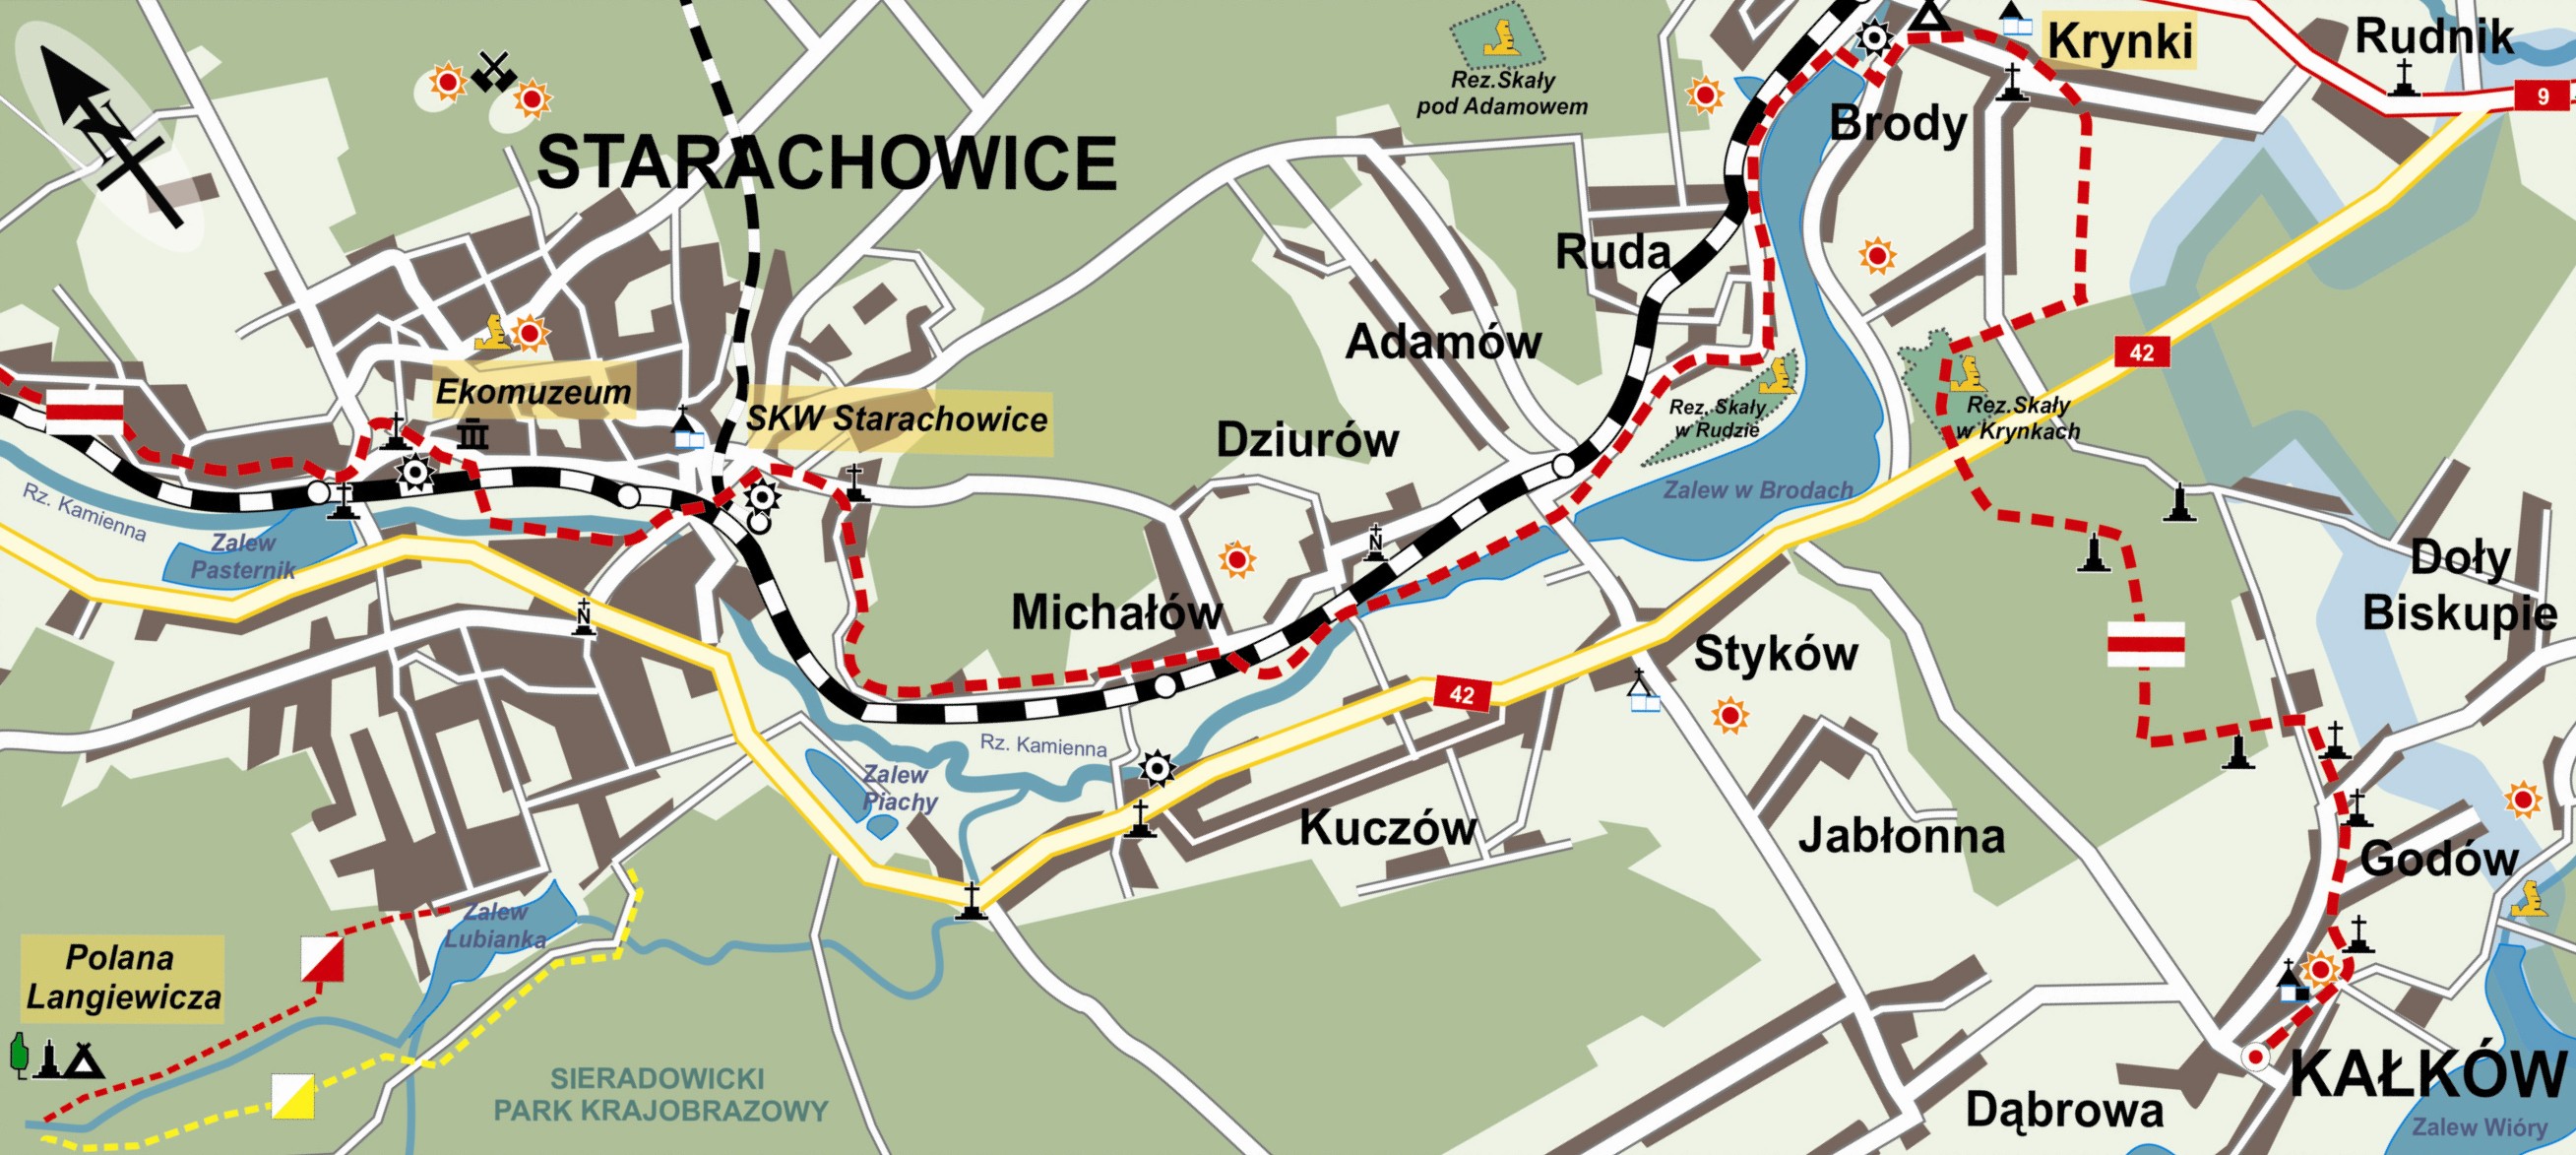 mapa szlaku pieszego milenijnego Kałków - Krynki - Starachowice - Skarżysko